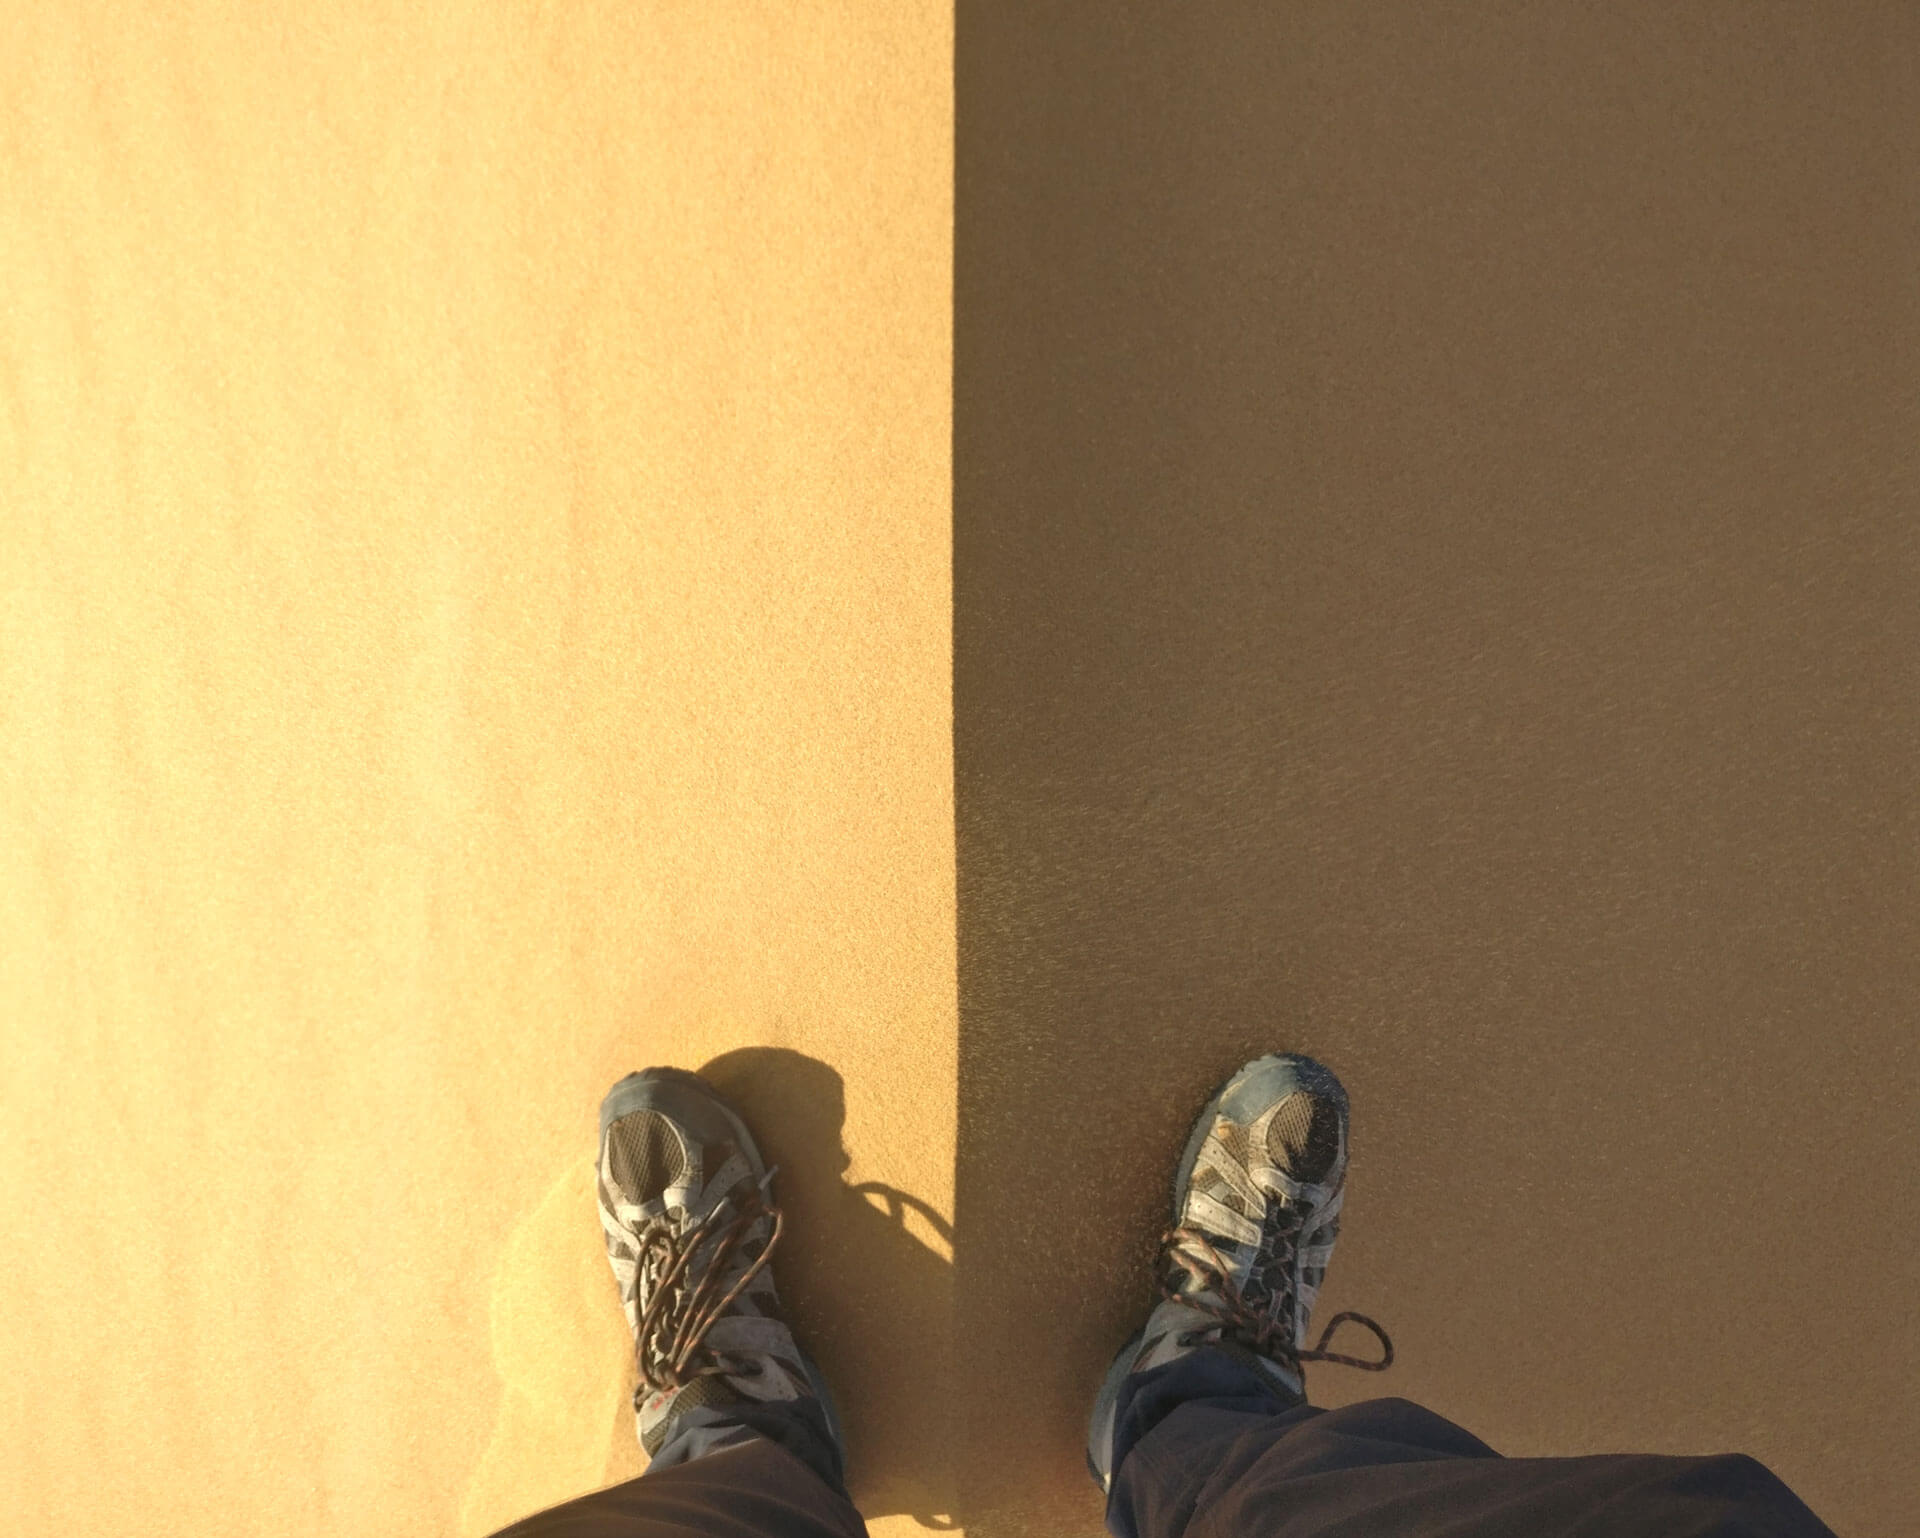 Une photo de pieds de part et d&rsquo;autre de l&rsquo;arrête d&rsquo;une dune, le côté droit à l&rsquo;ombre, et le gauche au soleil